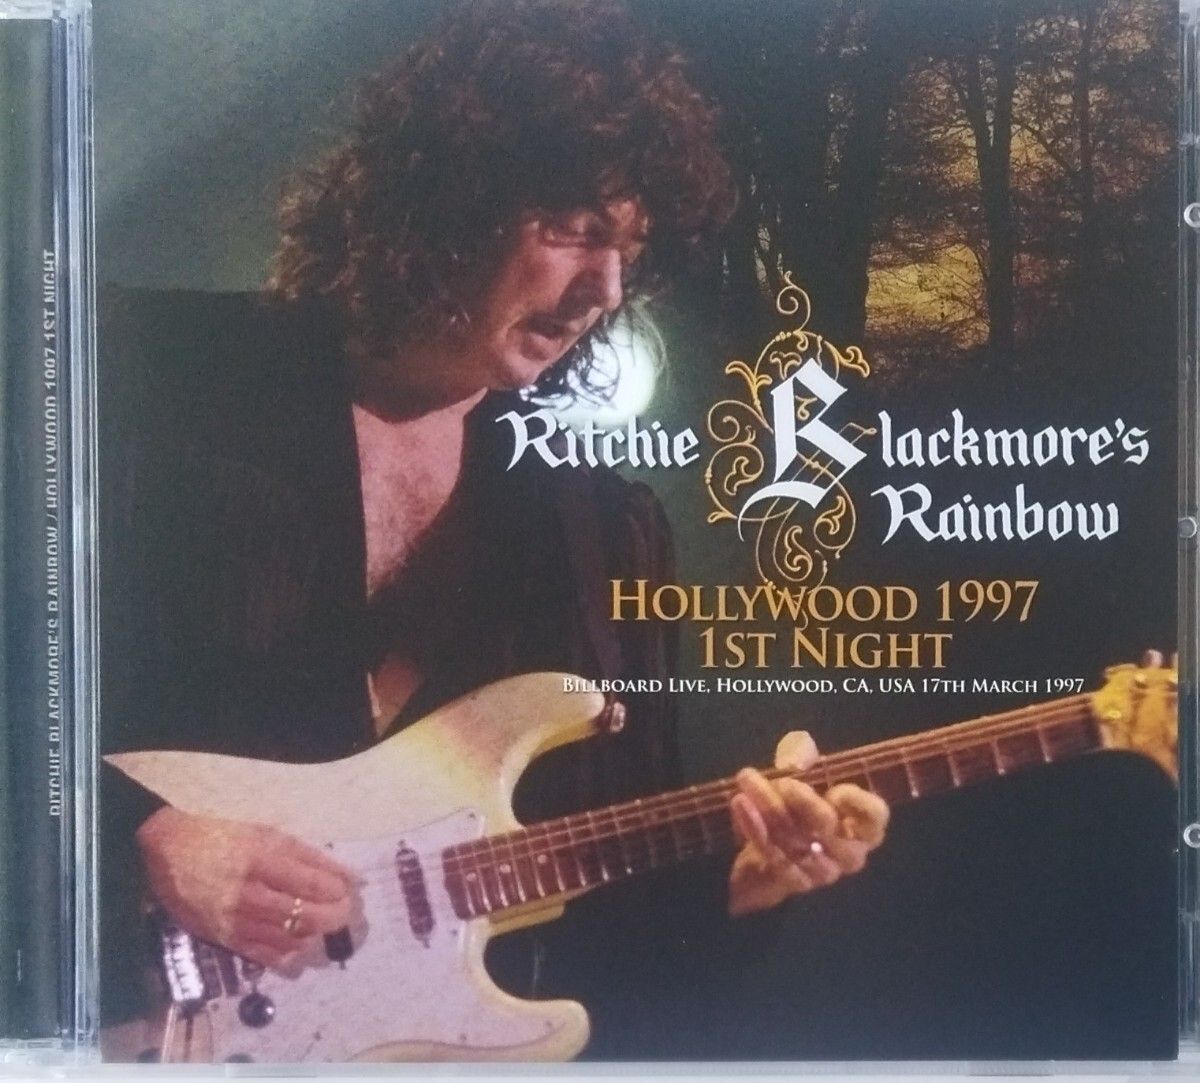 【送料ゼロ】Rainbow '97 Live Hollywood USA リッチー・ブラックモア レインボー Ritchie Blackmore's